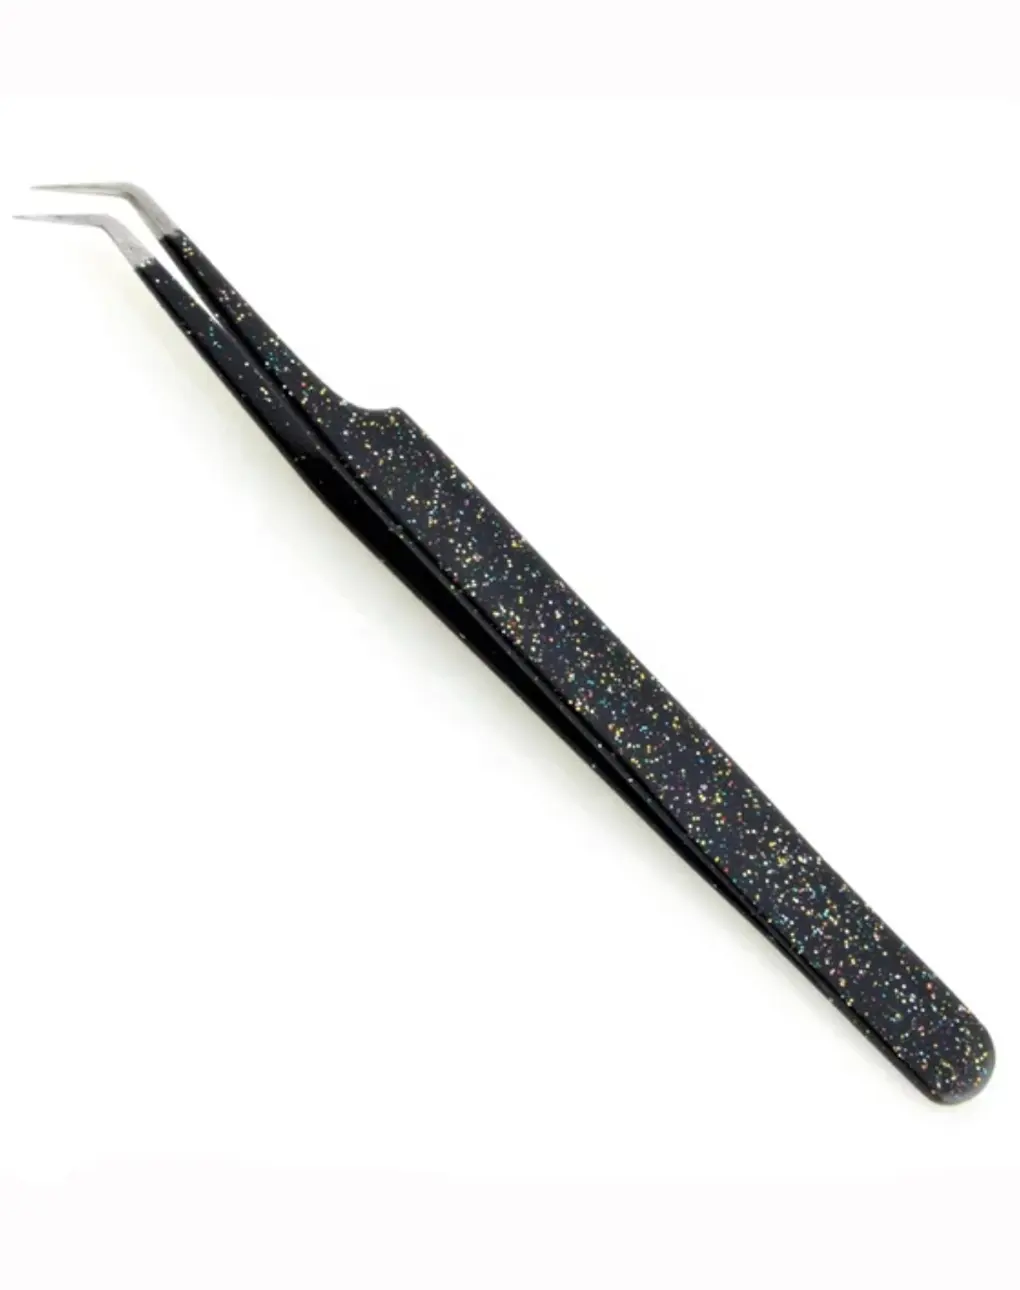 Juego de pinzas profesionales para pestañas de alta calidad, puntas afiladas de acero inoxidable rectas y pinzas negras curvas de 45 grados